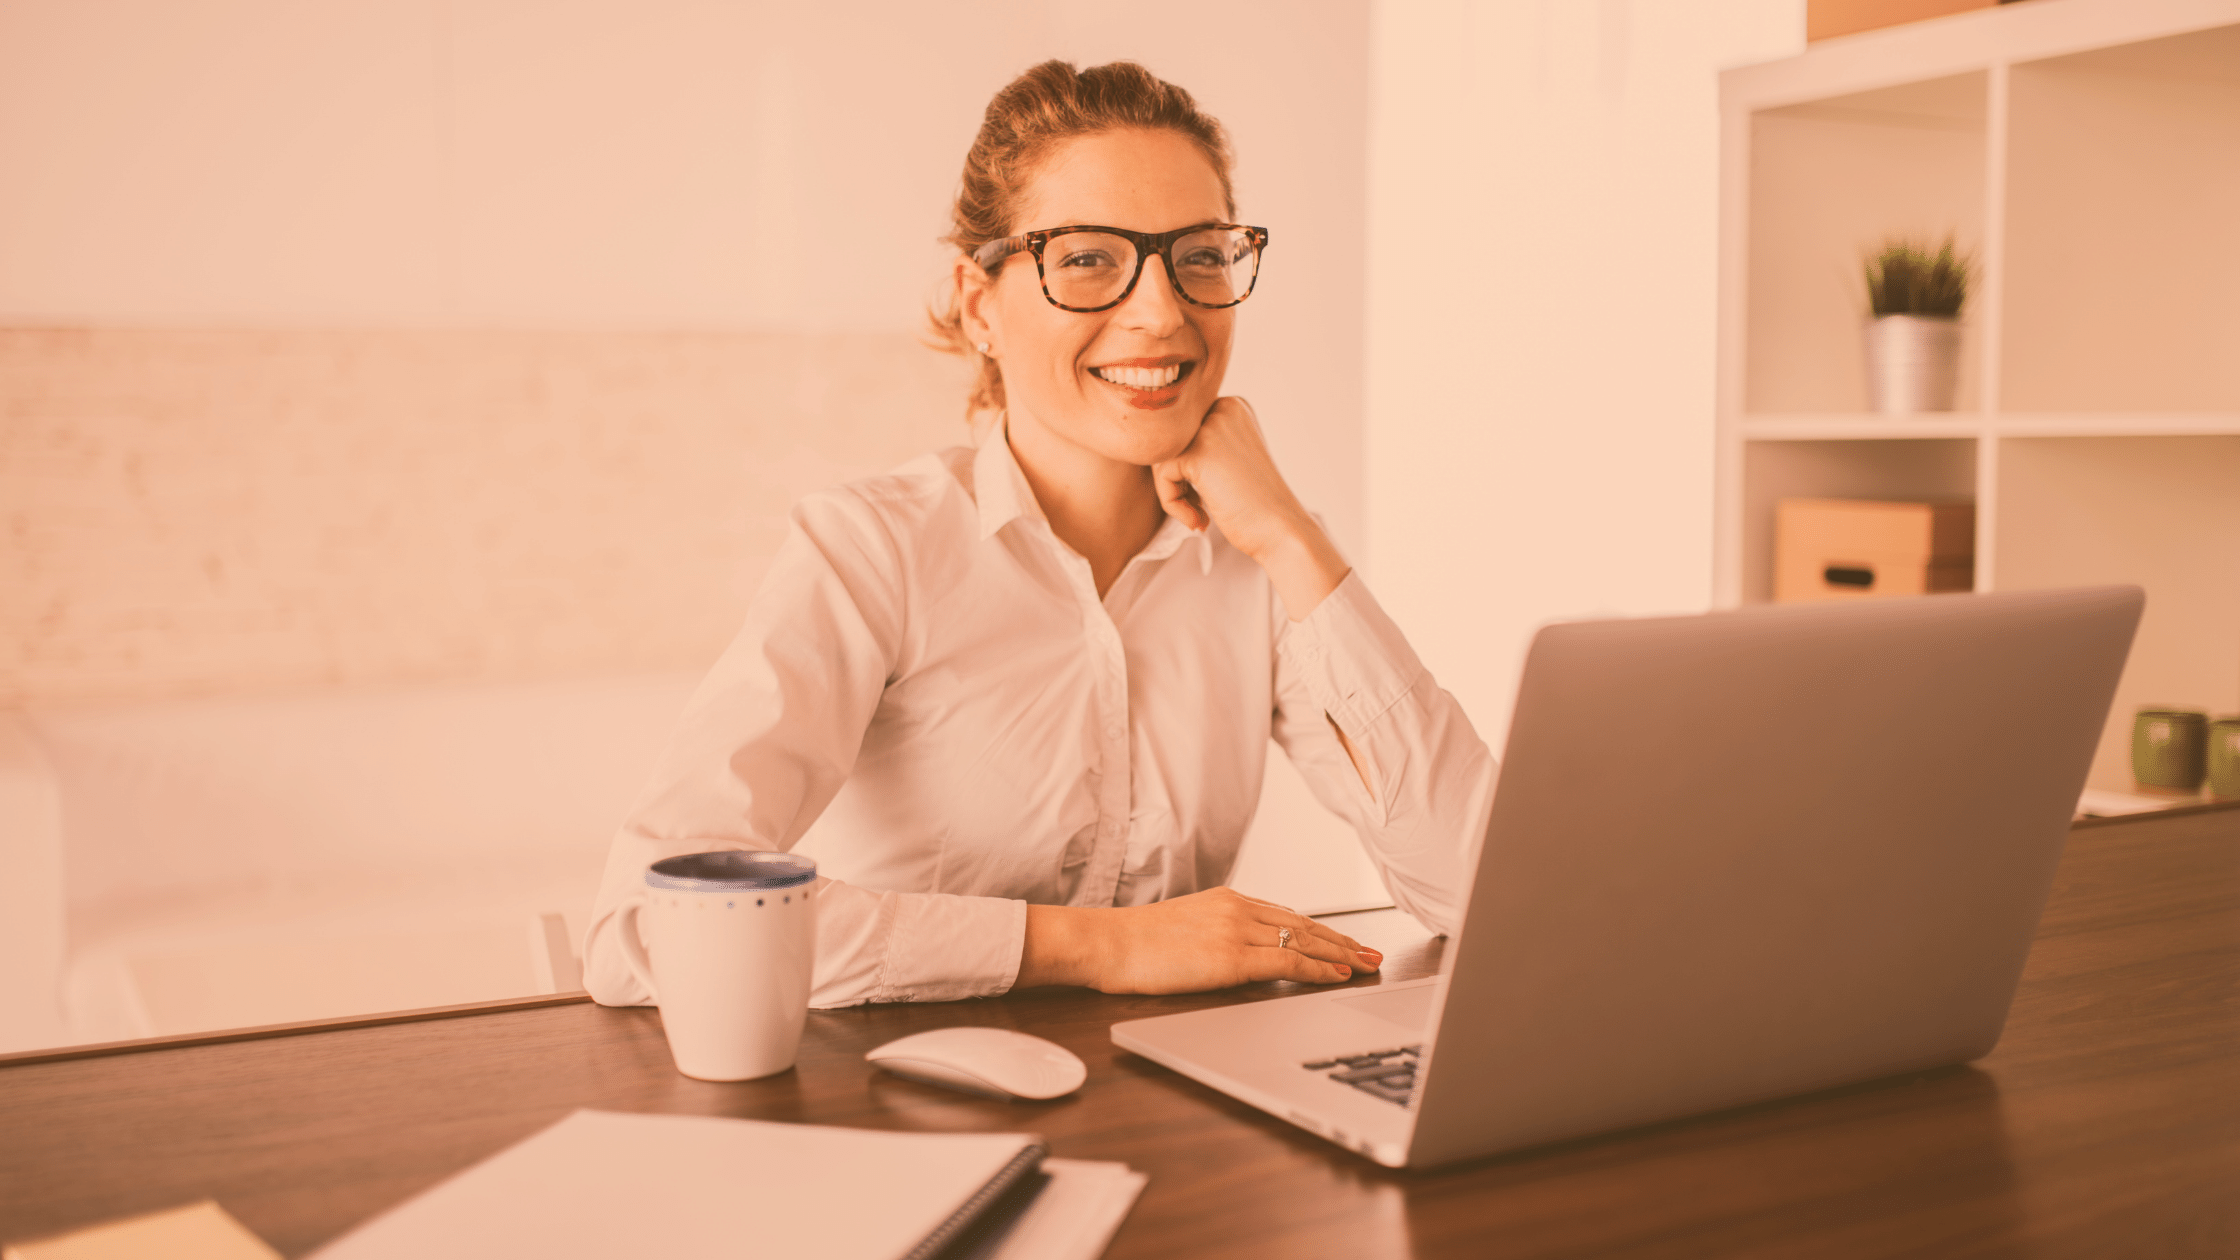 Kobieta siedzi przy biurku przy laptopie, uśmiecha się. Ma na sobie białą koszulę i okulary. 